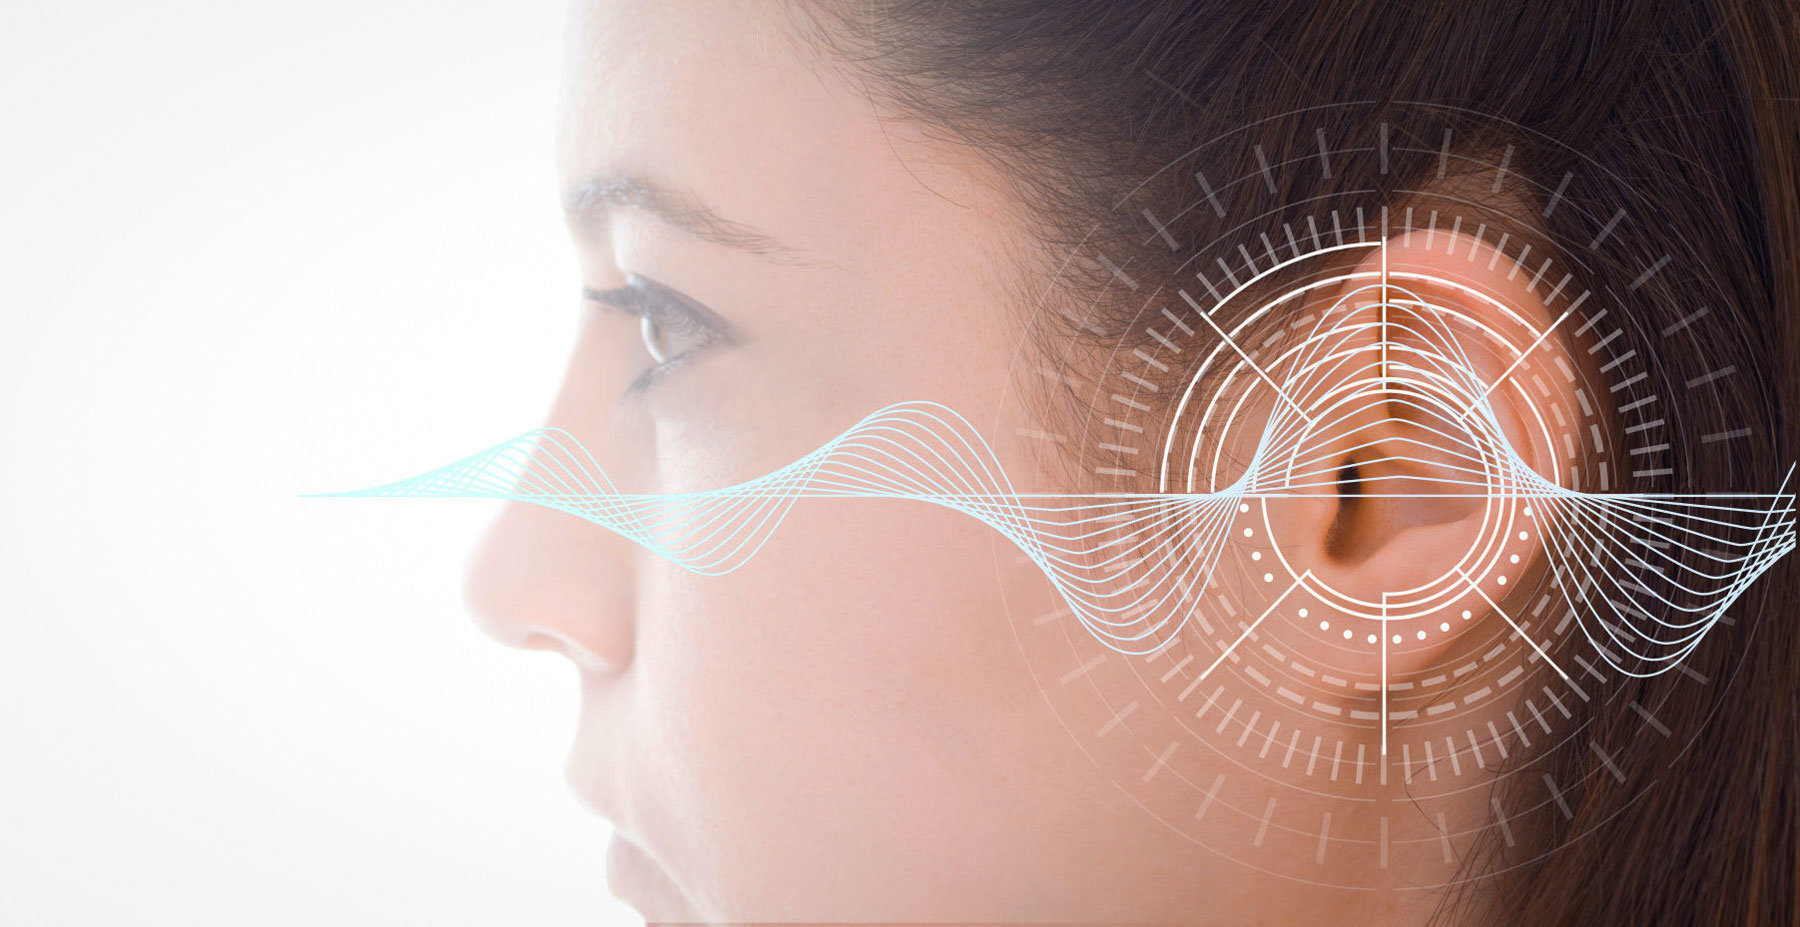 لماذا نسمع صوت طنين في الأذن فجأة؟ وهذا هو علاجه